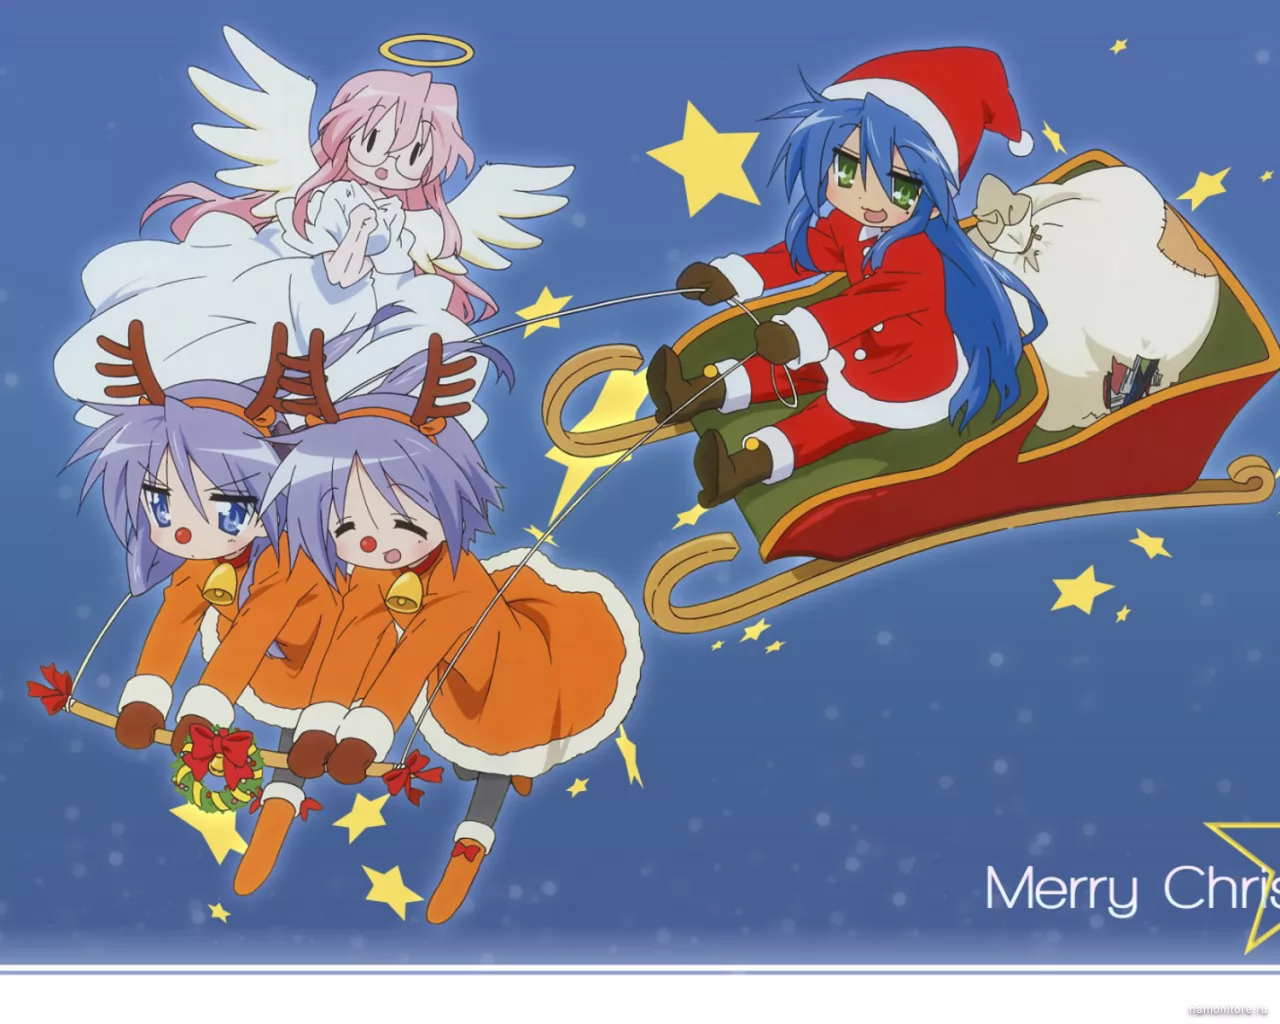 Lucky Star, аниме, Новый год, праздники, рисованное, синее х